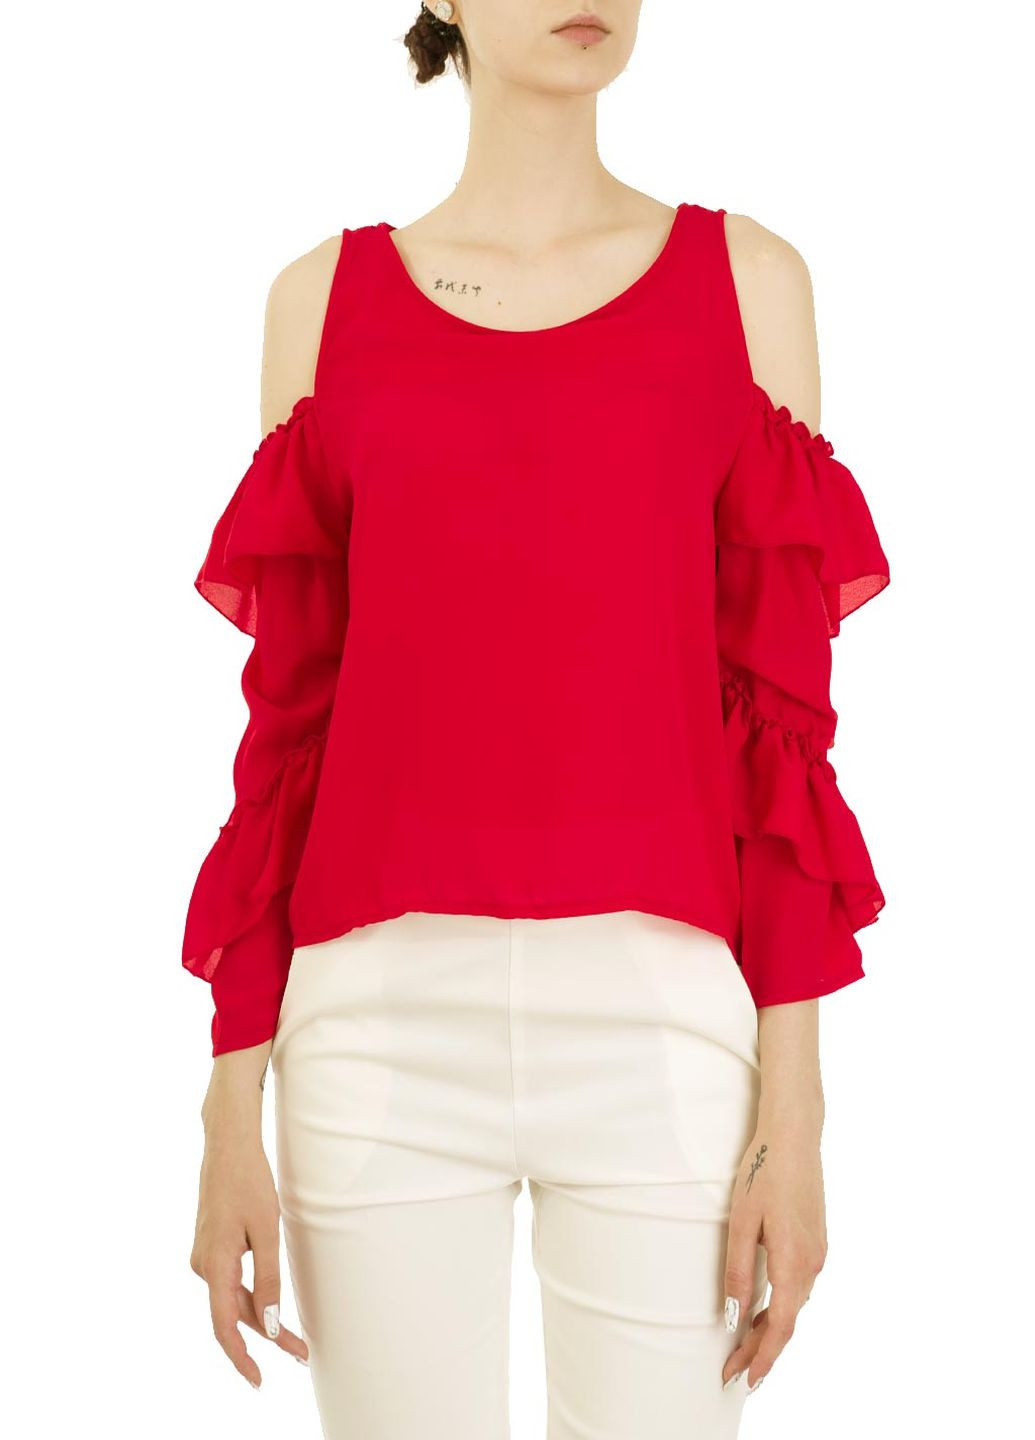 Червона літня блуза Zimo